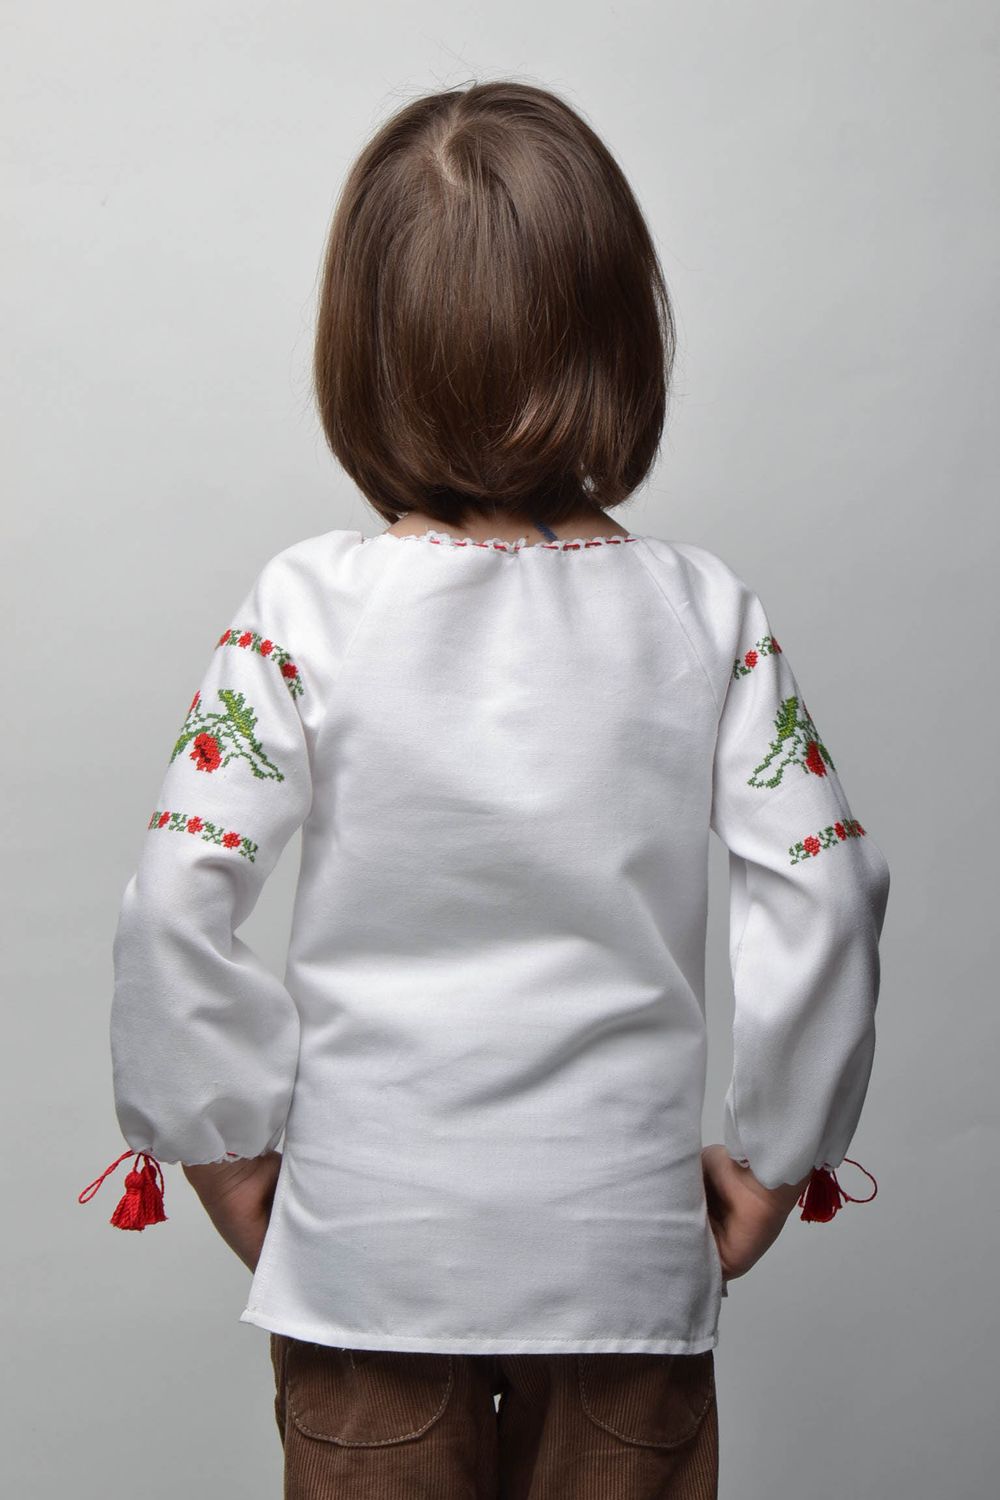 Вышитая рубашка для девочки на 5-7 лет с длинным рукавом фото 4